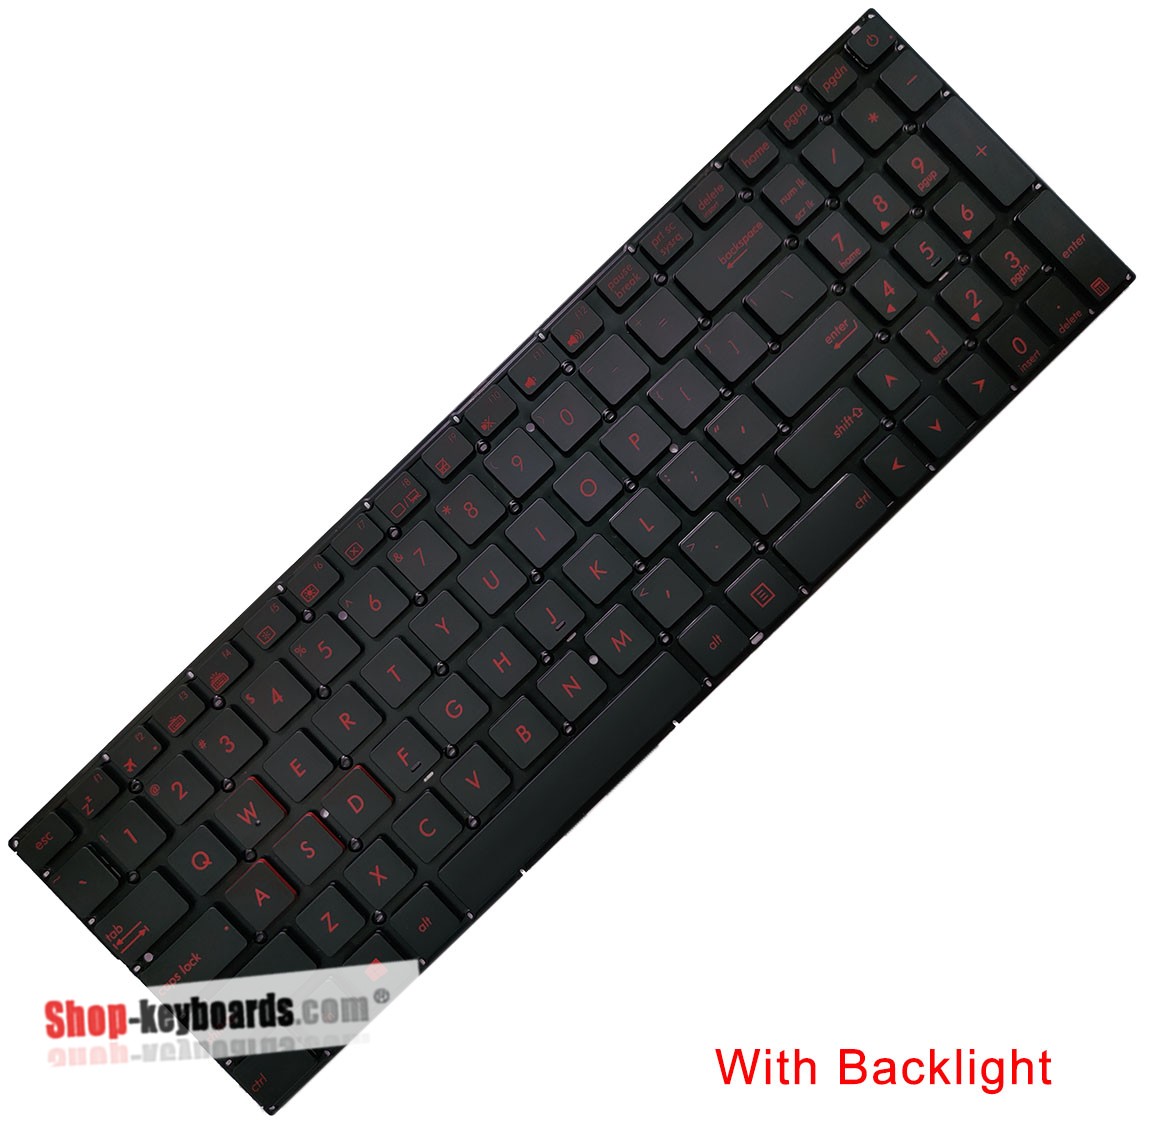 Asus 0KNB0-662MUK00 Keyboard replacement